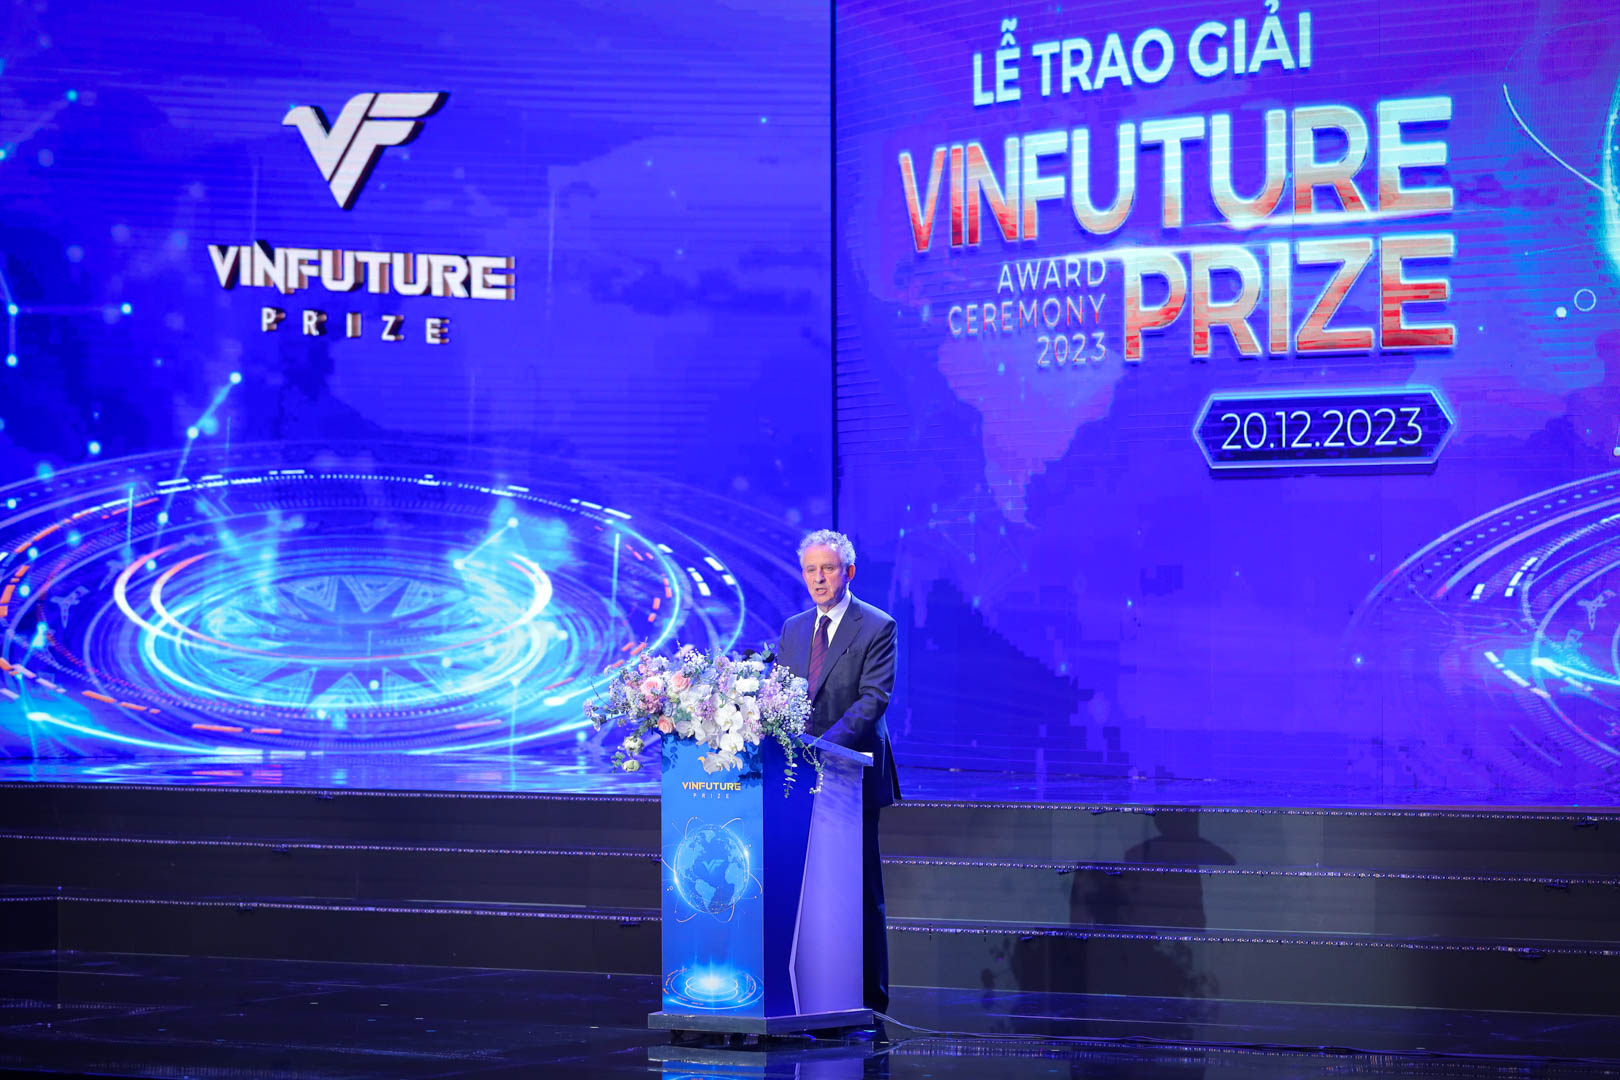 Kinh tế - Chủ tịch Hội đồng Giải thưởng VinFuture: “Nhà khoa học Việt có thể sánh ngang các trí tuệ hàng đầu thế giới” (Hình 2).